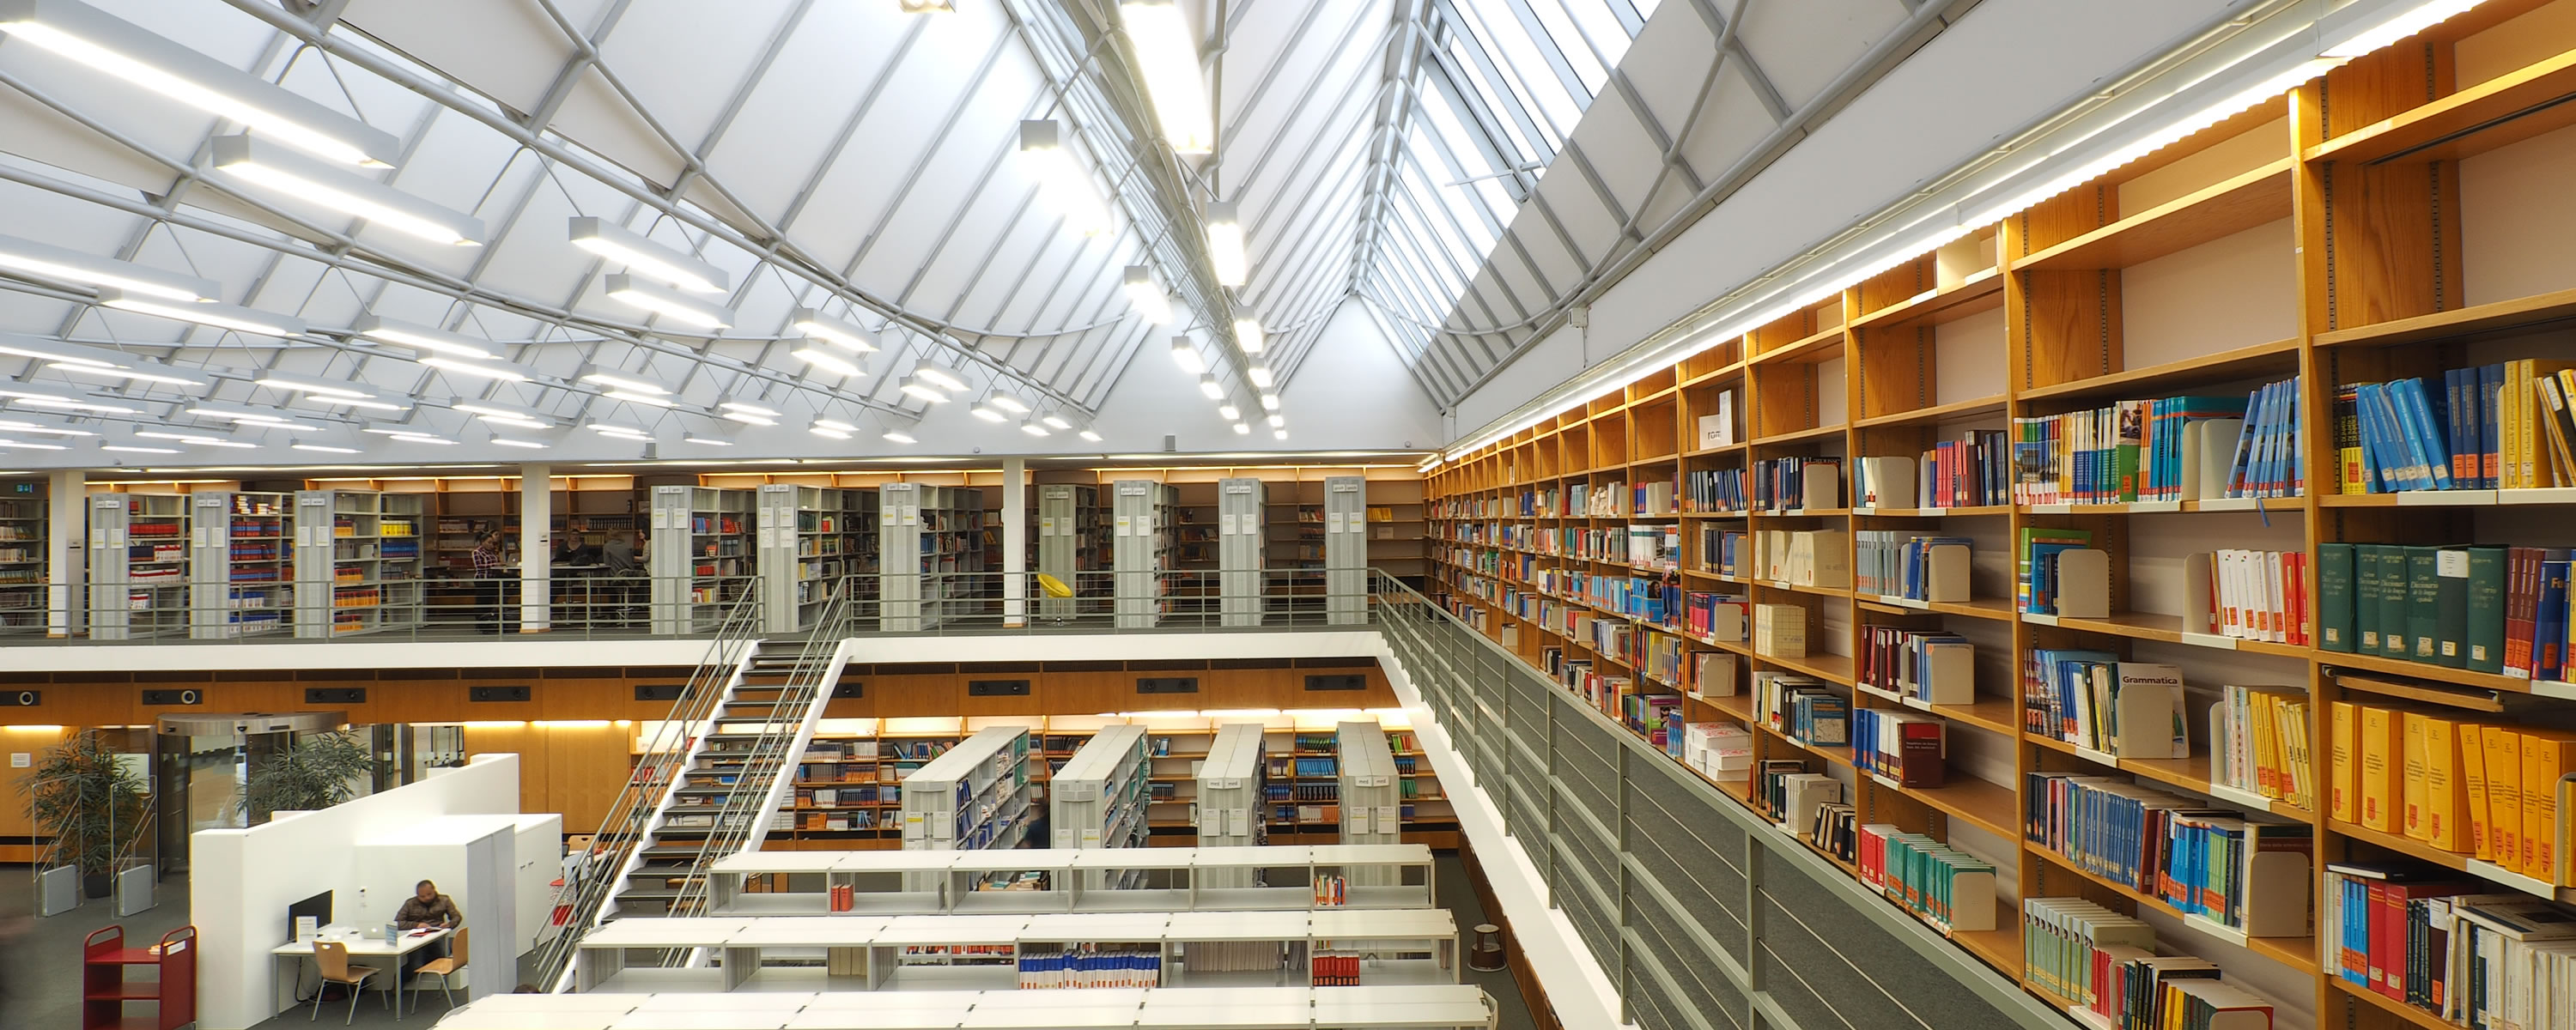 Universitätsbibliothek Tuebingen